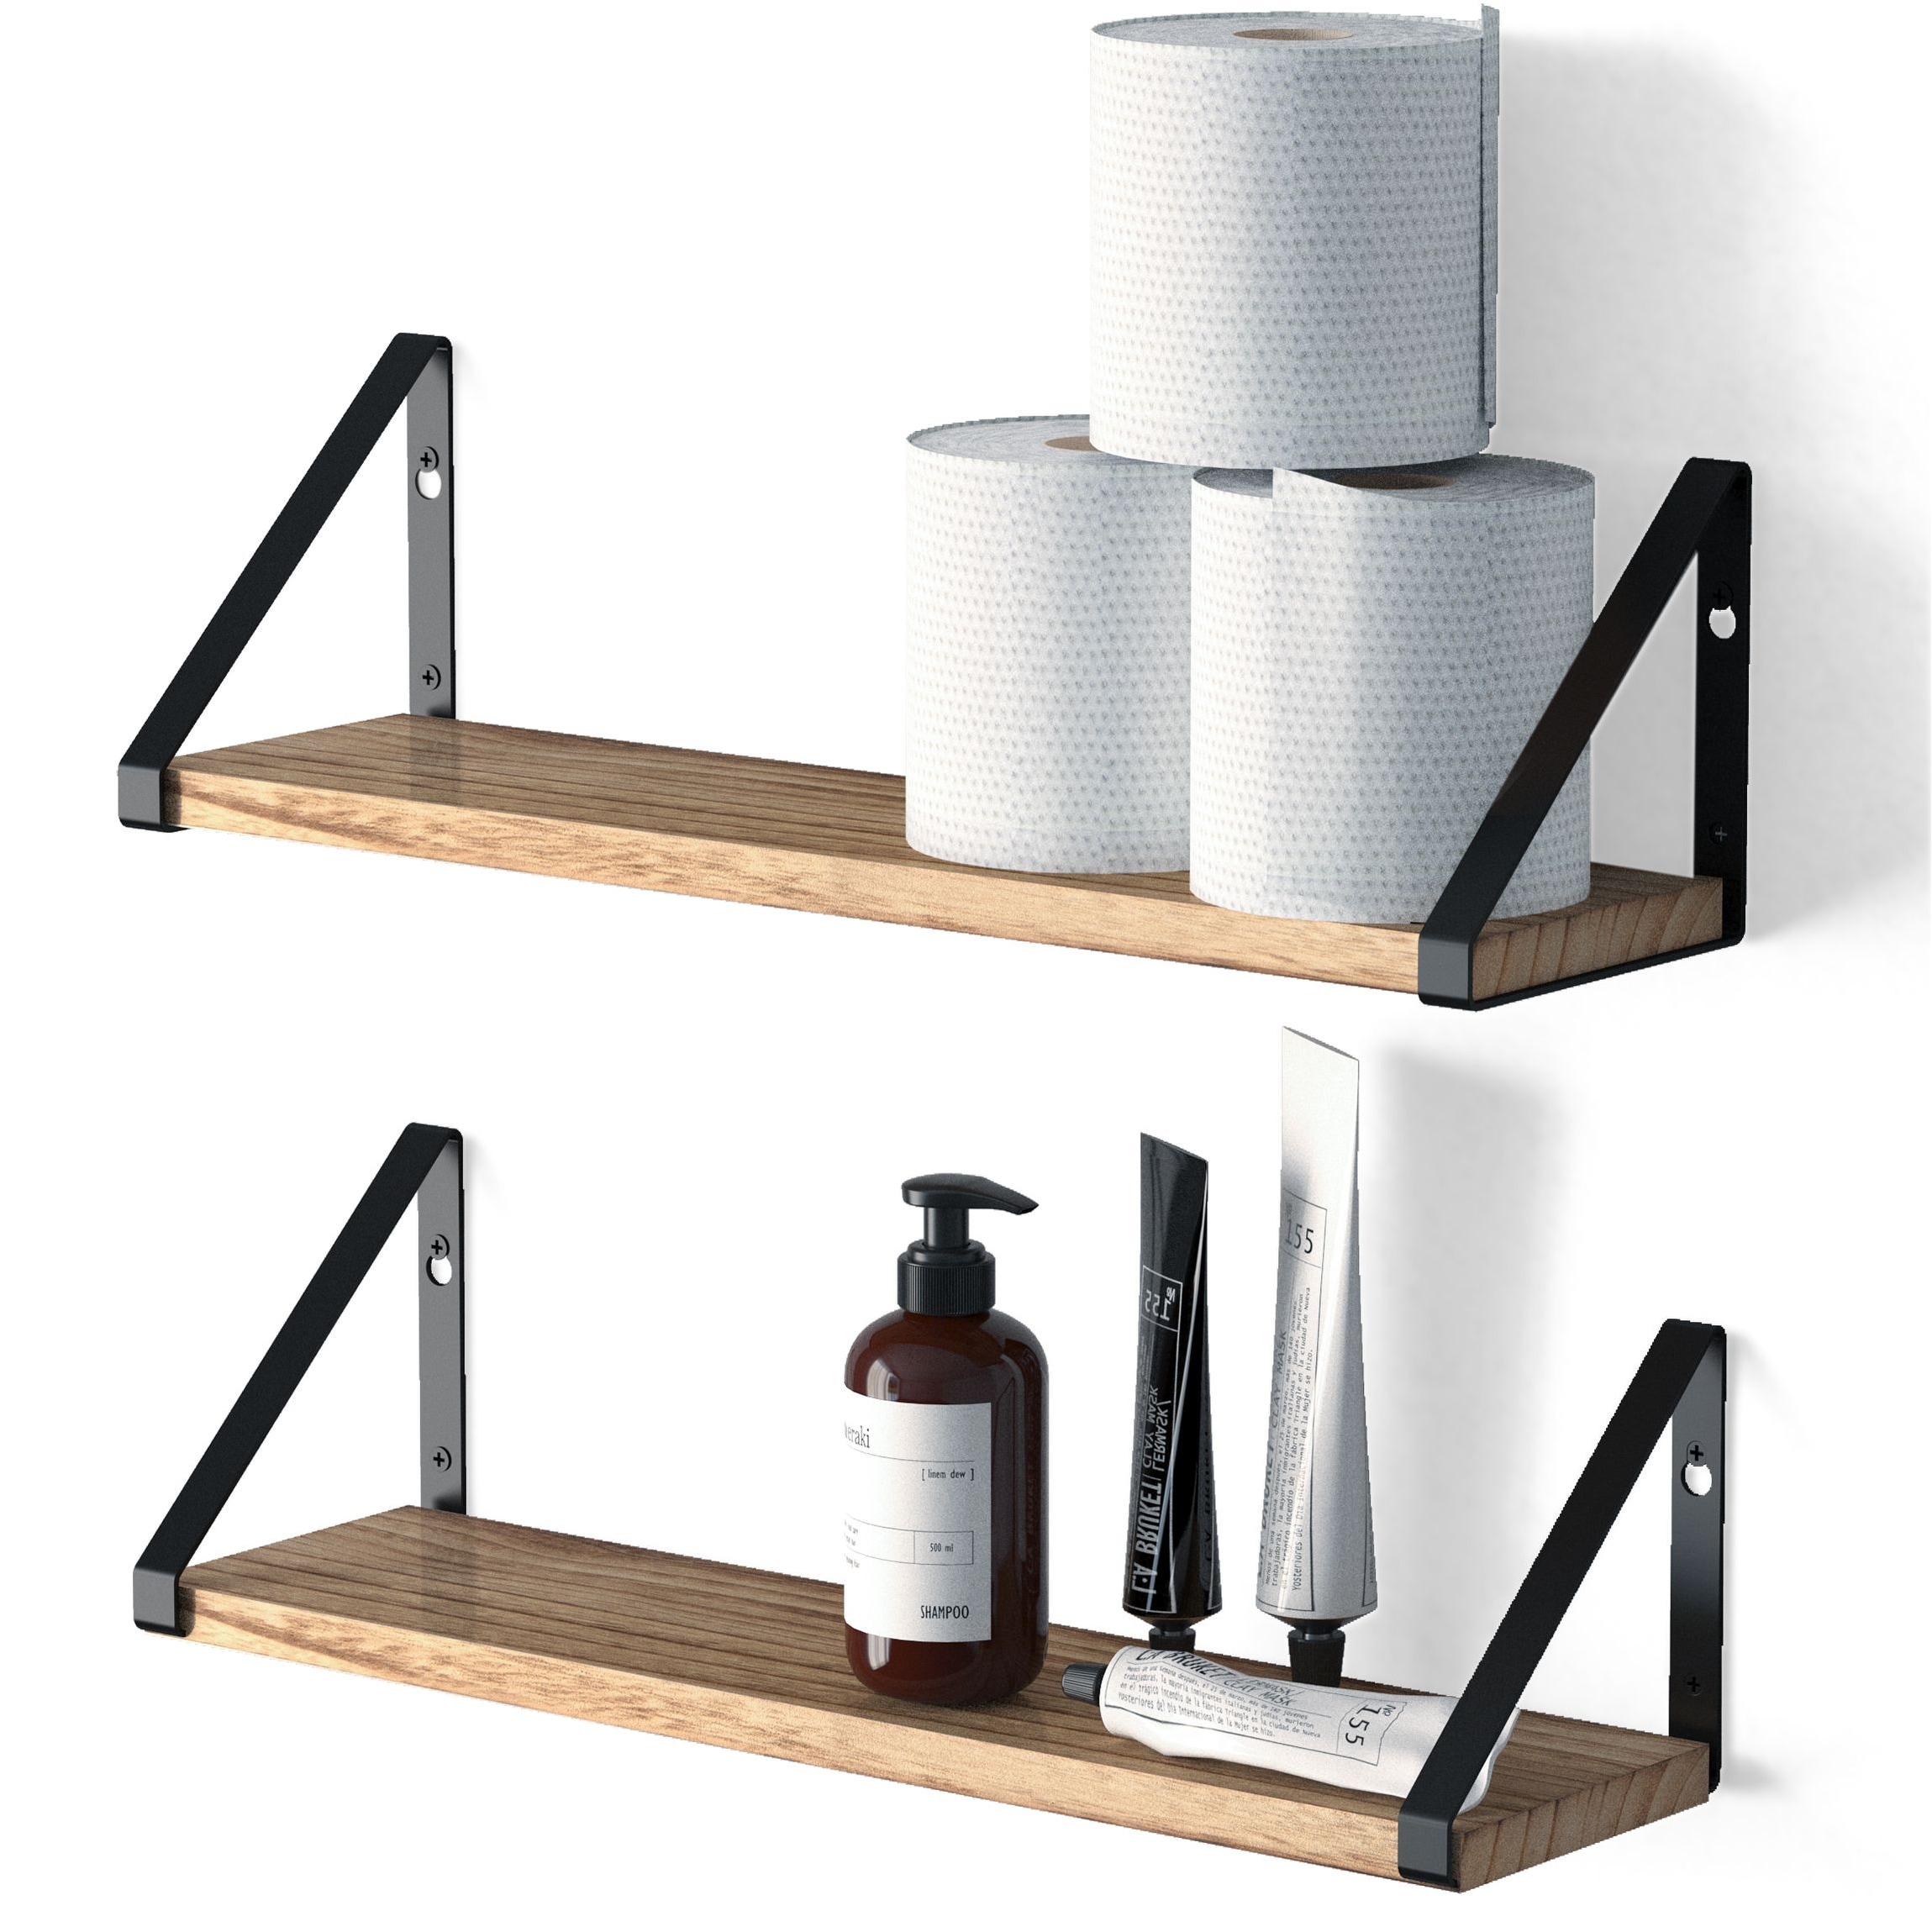 Minori Floating Shelves for Wall, Bathroom Shelves for Over The